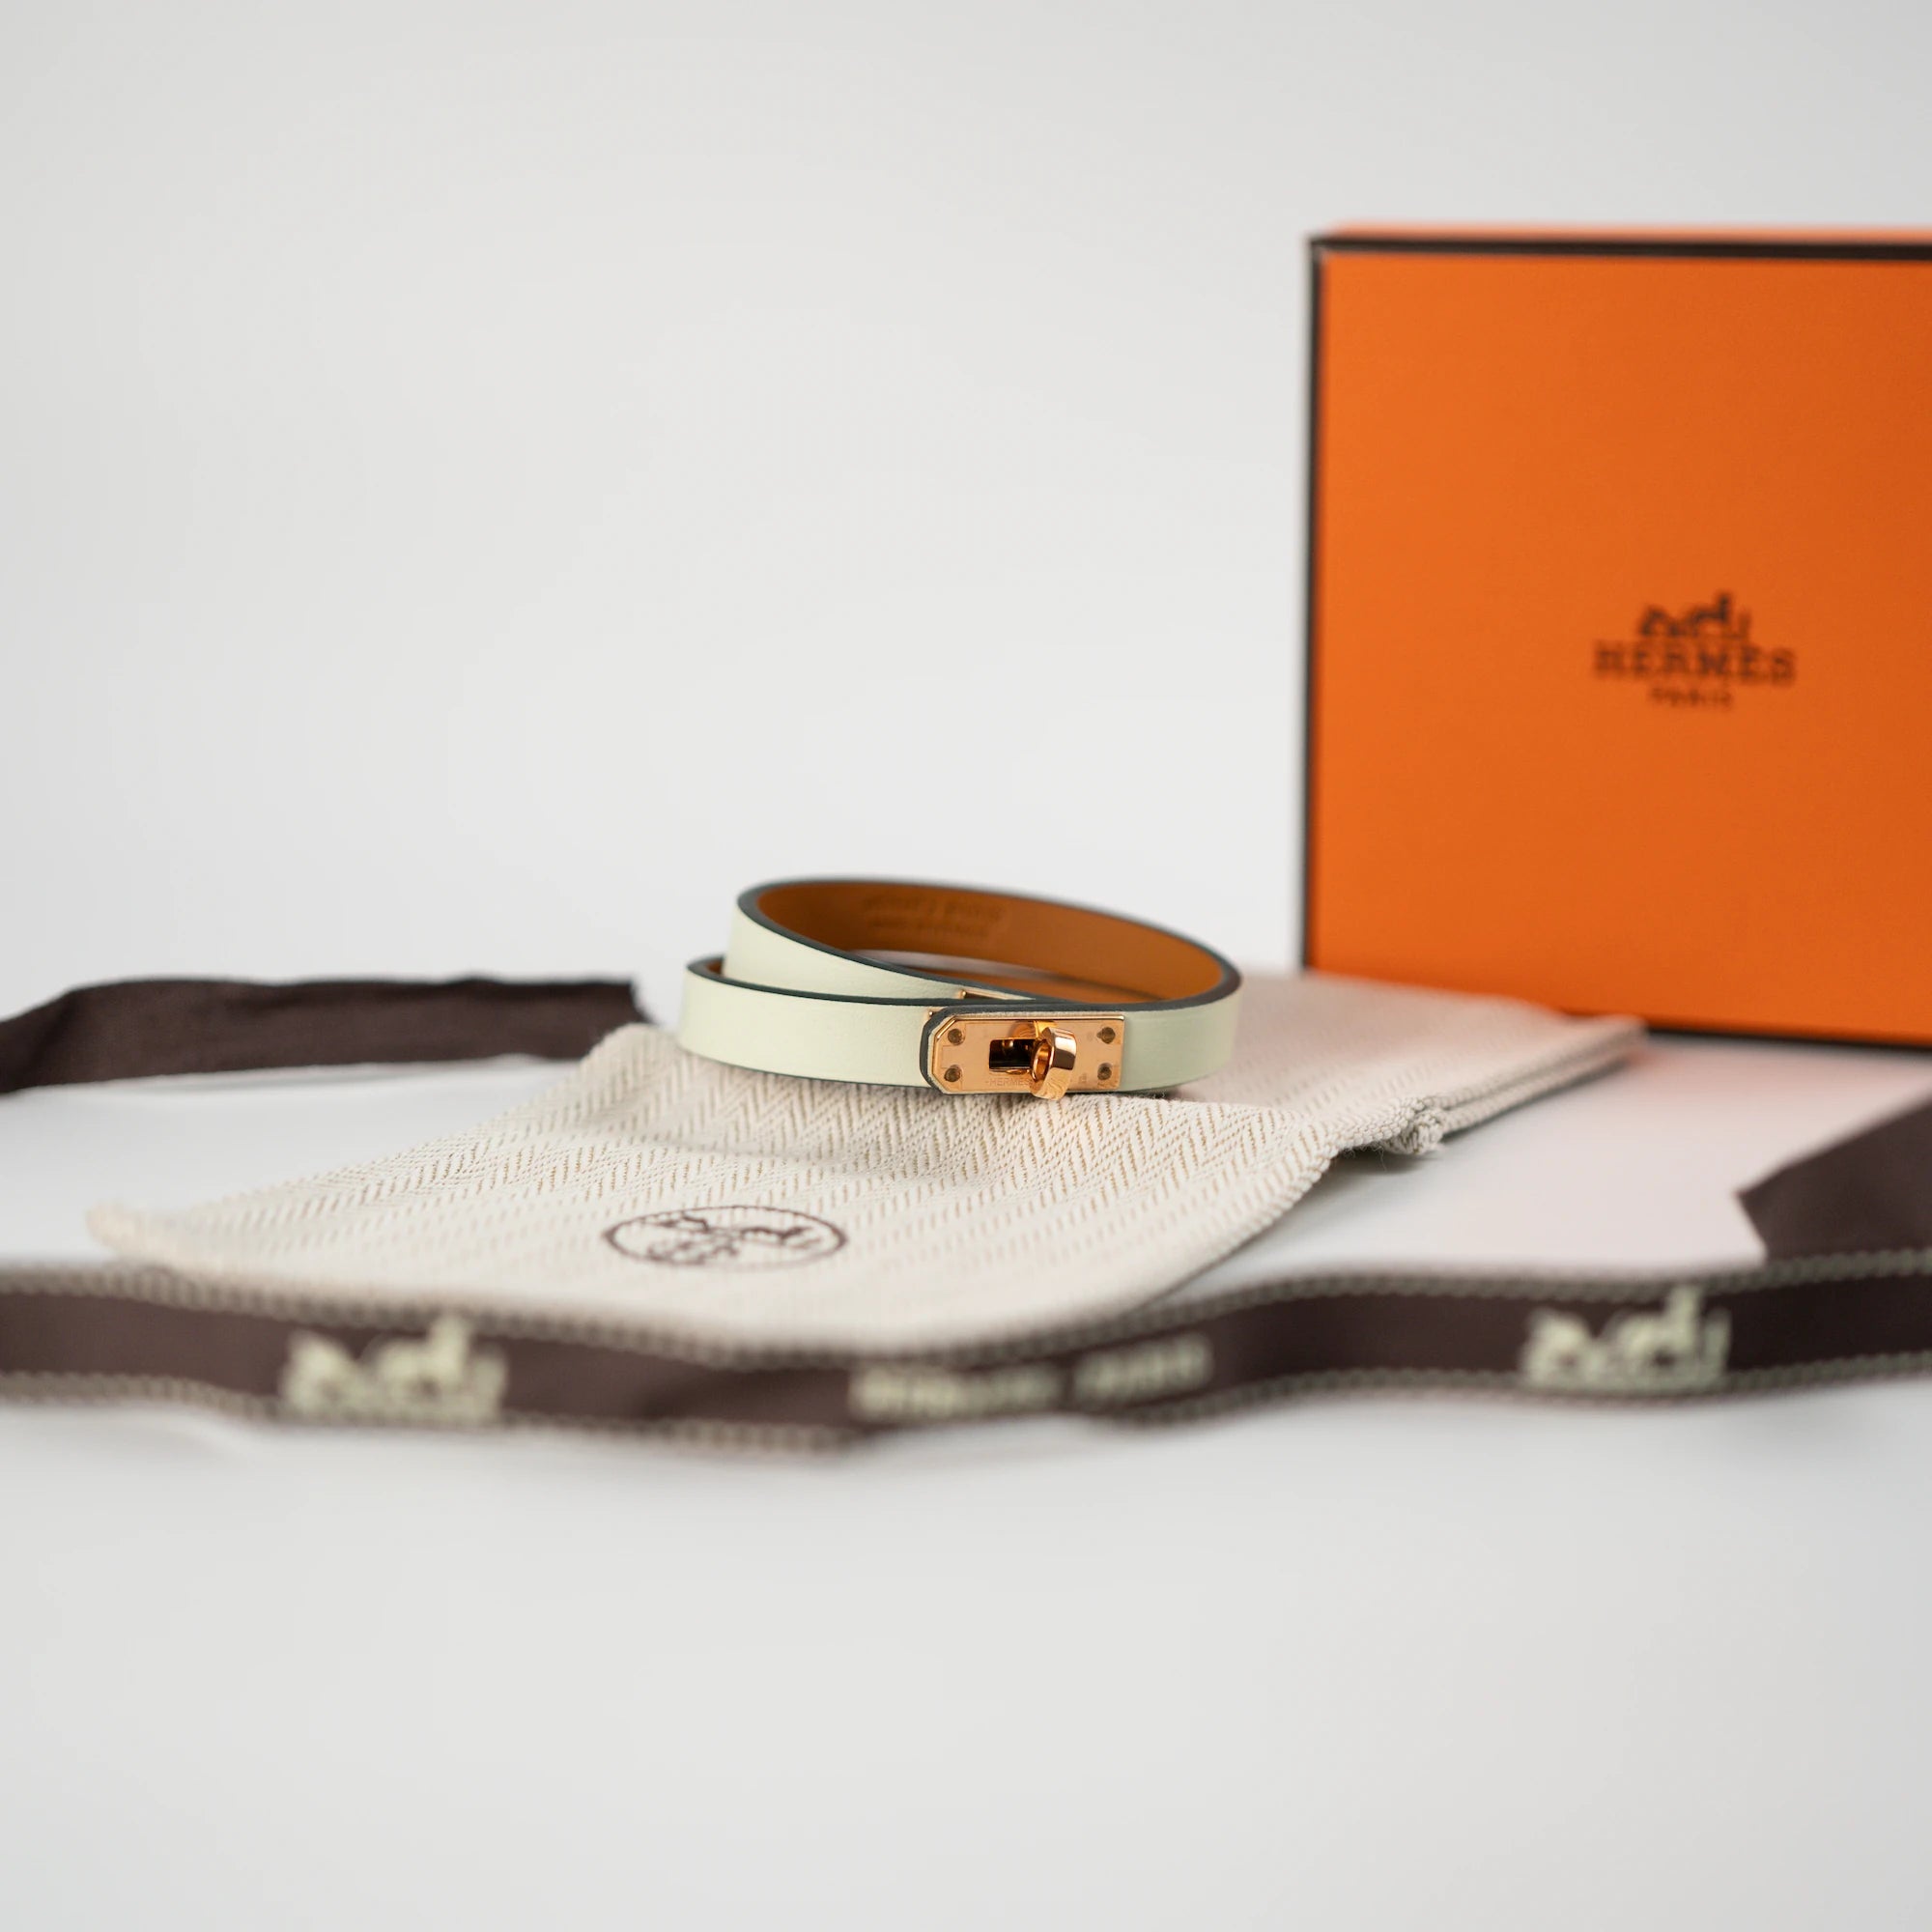 Produktfotografie des Türkises Leder-Armband "Mini Kelly Double Tour" von Hermès mit rosegoldenem Verschluss zusammen mit dem Lieferumfang